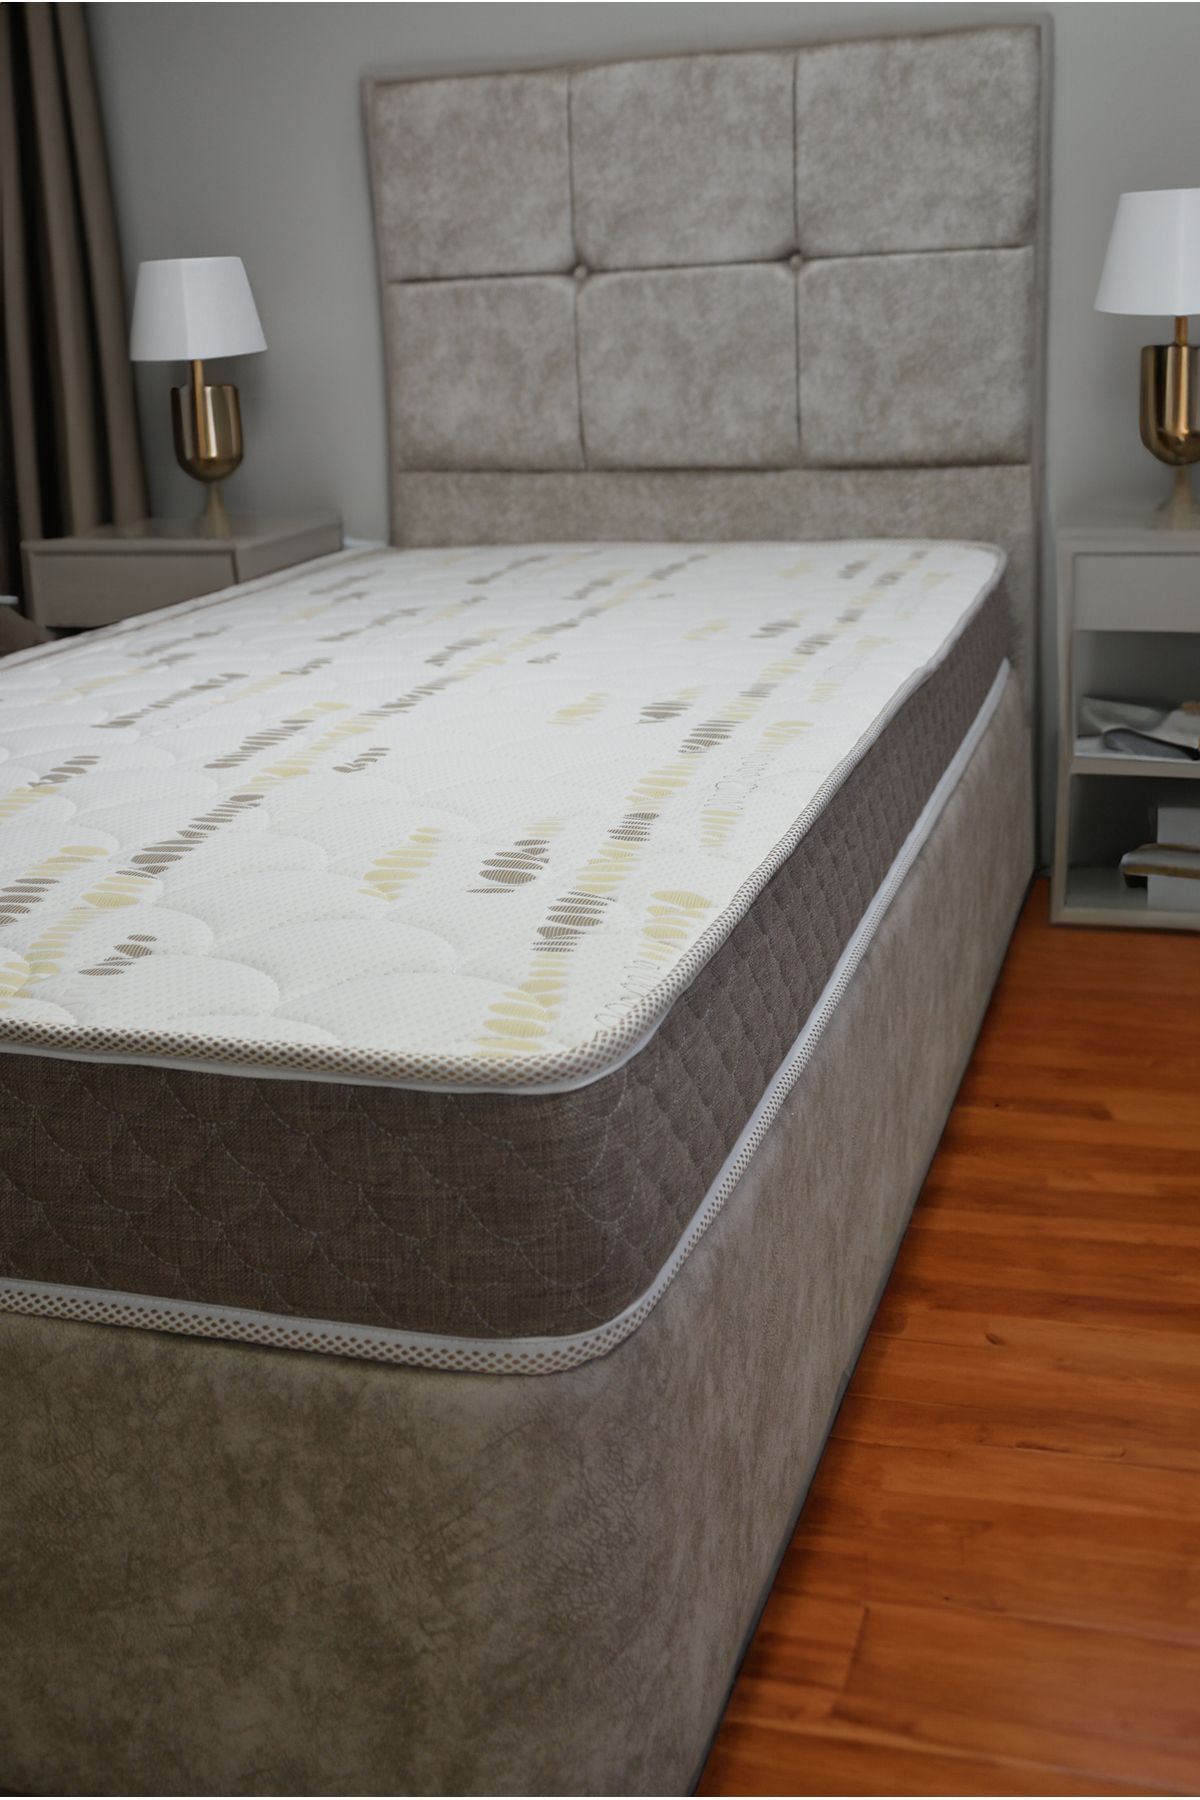 Pure Sleep 15 cm tek kişilik sünger baza yatağı, unisex full ortopedik yataklar, lux çocuk baza yatak